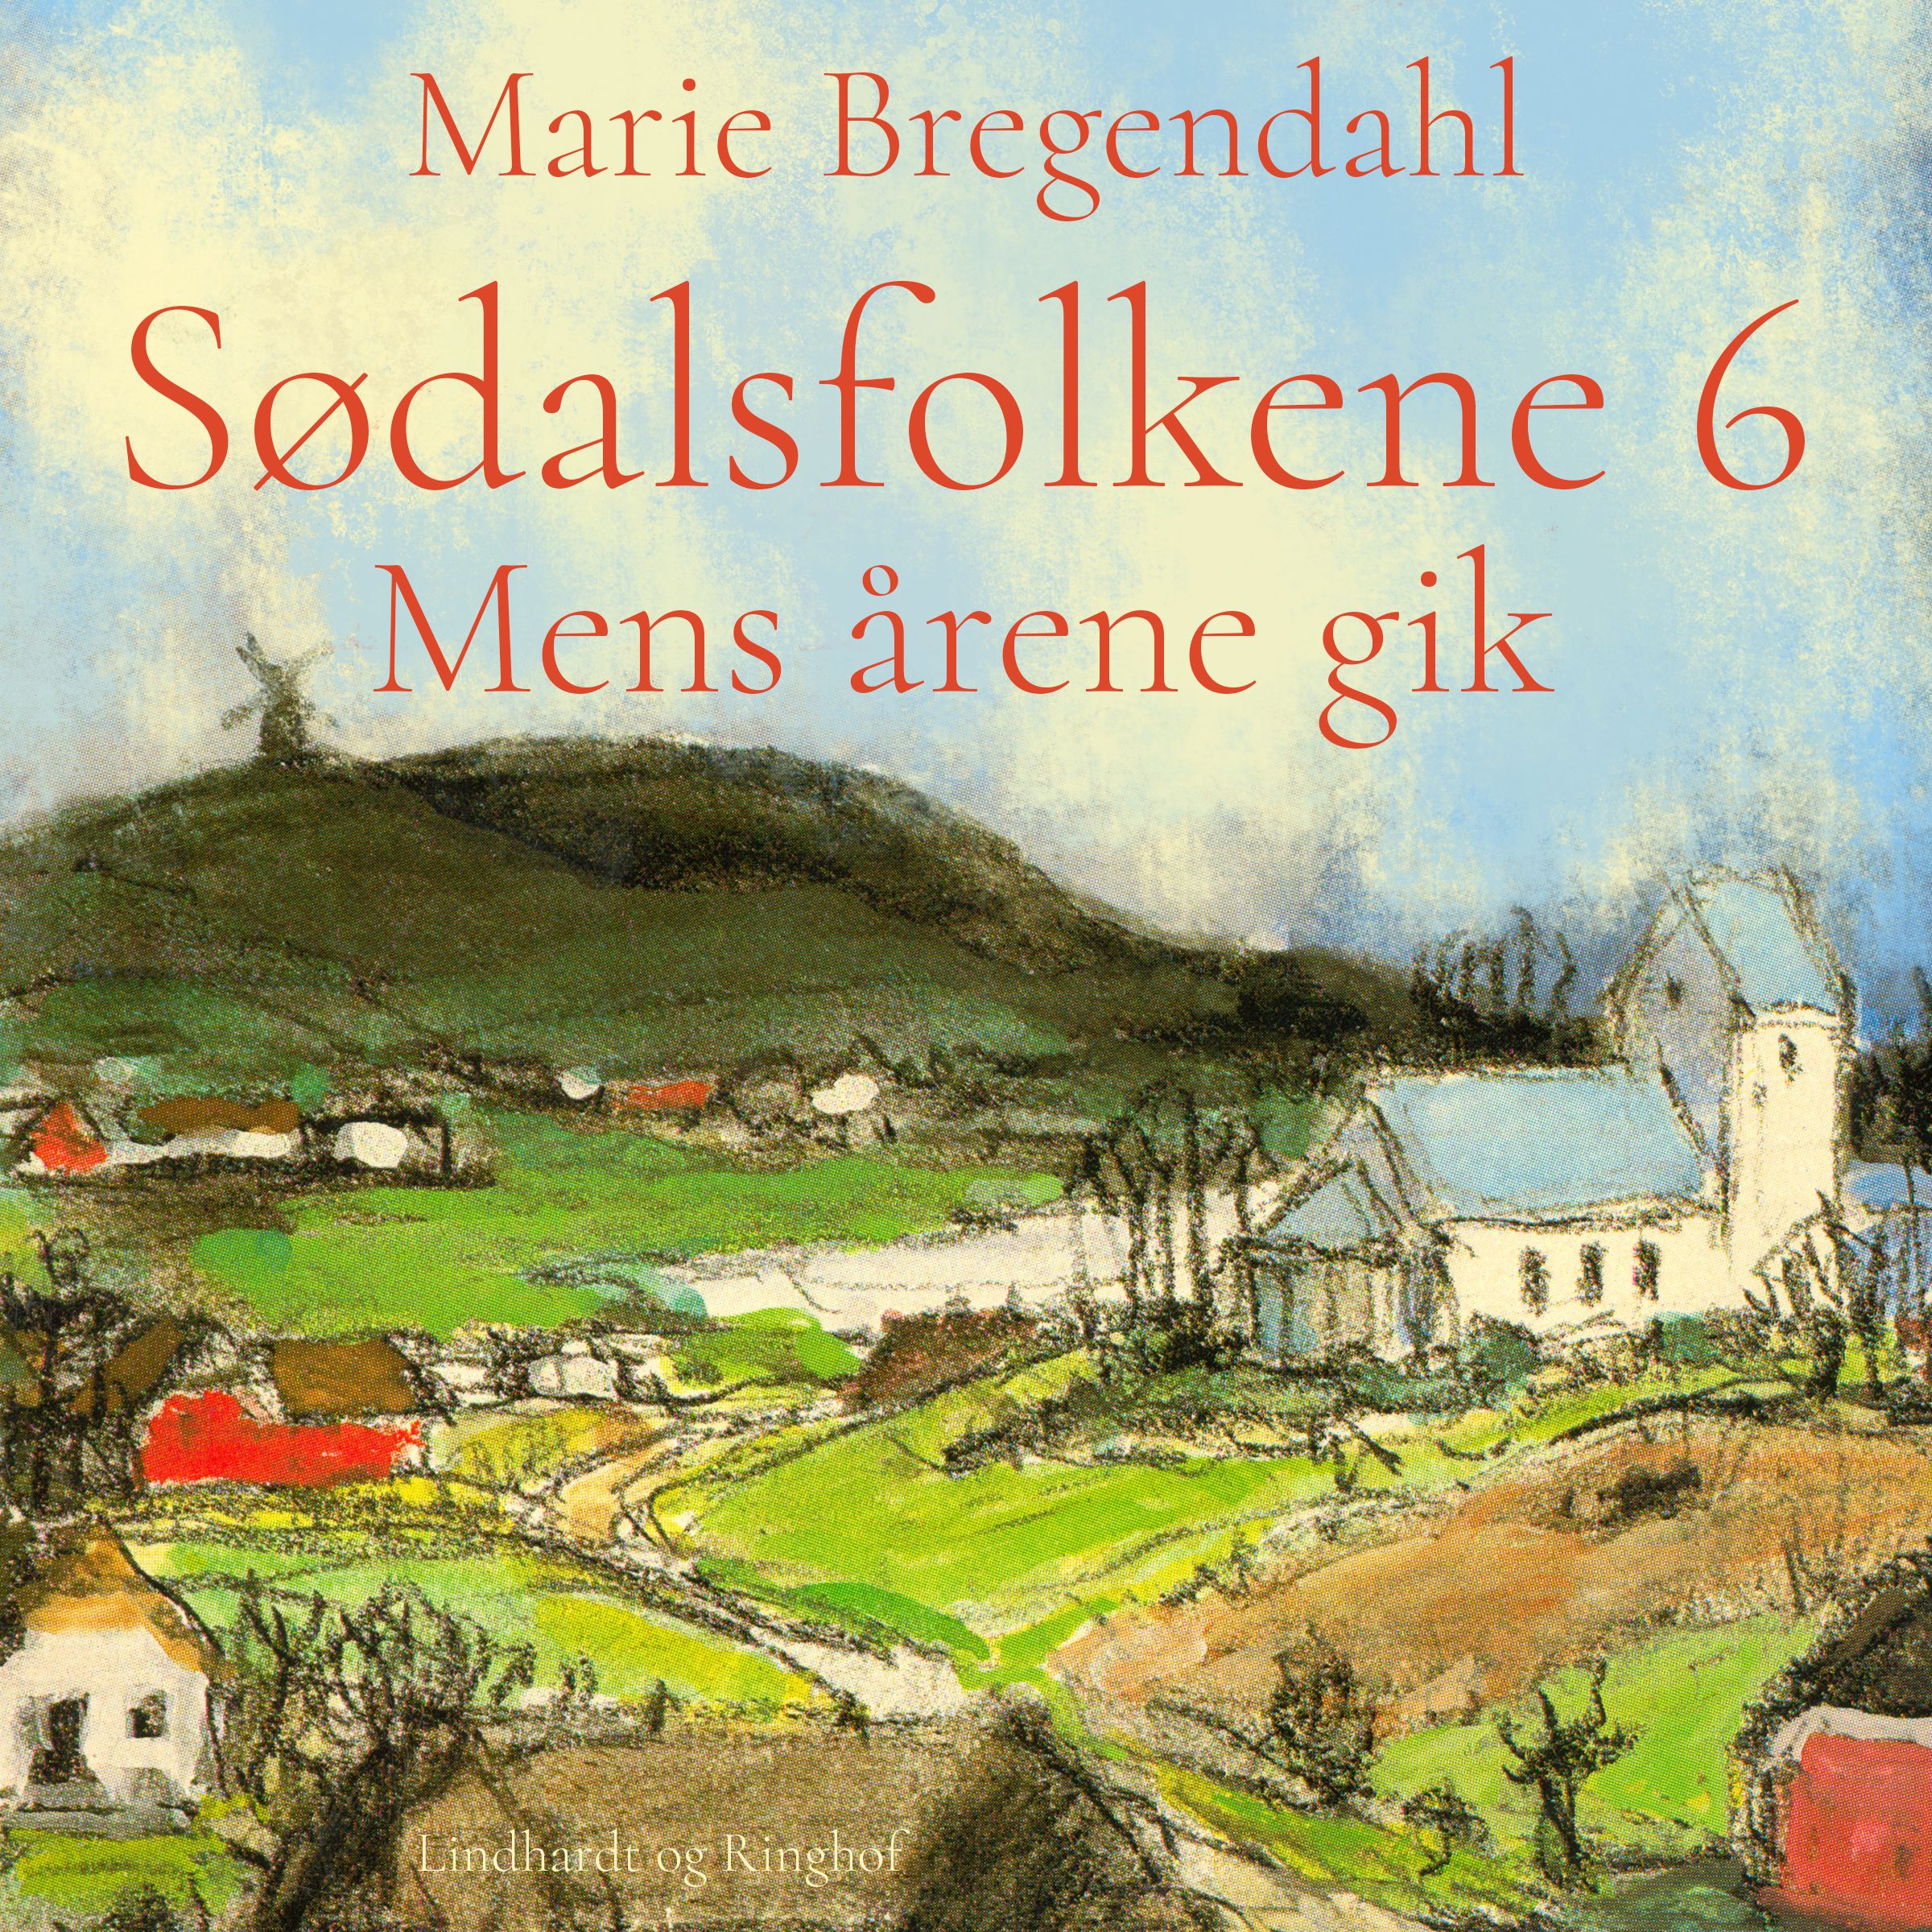 Sødalsfolkene - Mens årene gik, ljudbok av Marie Bregendahl